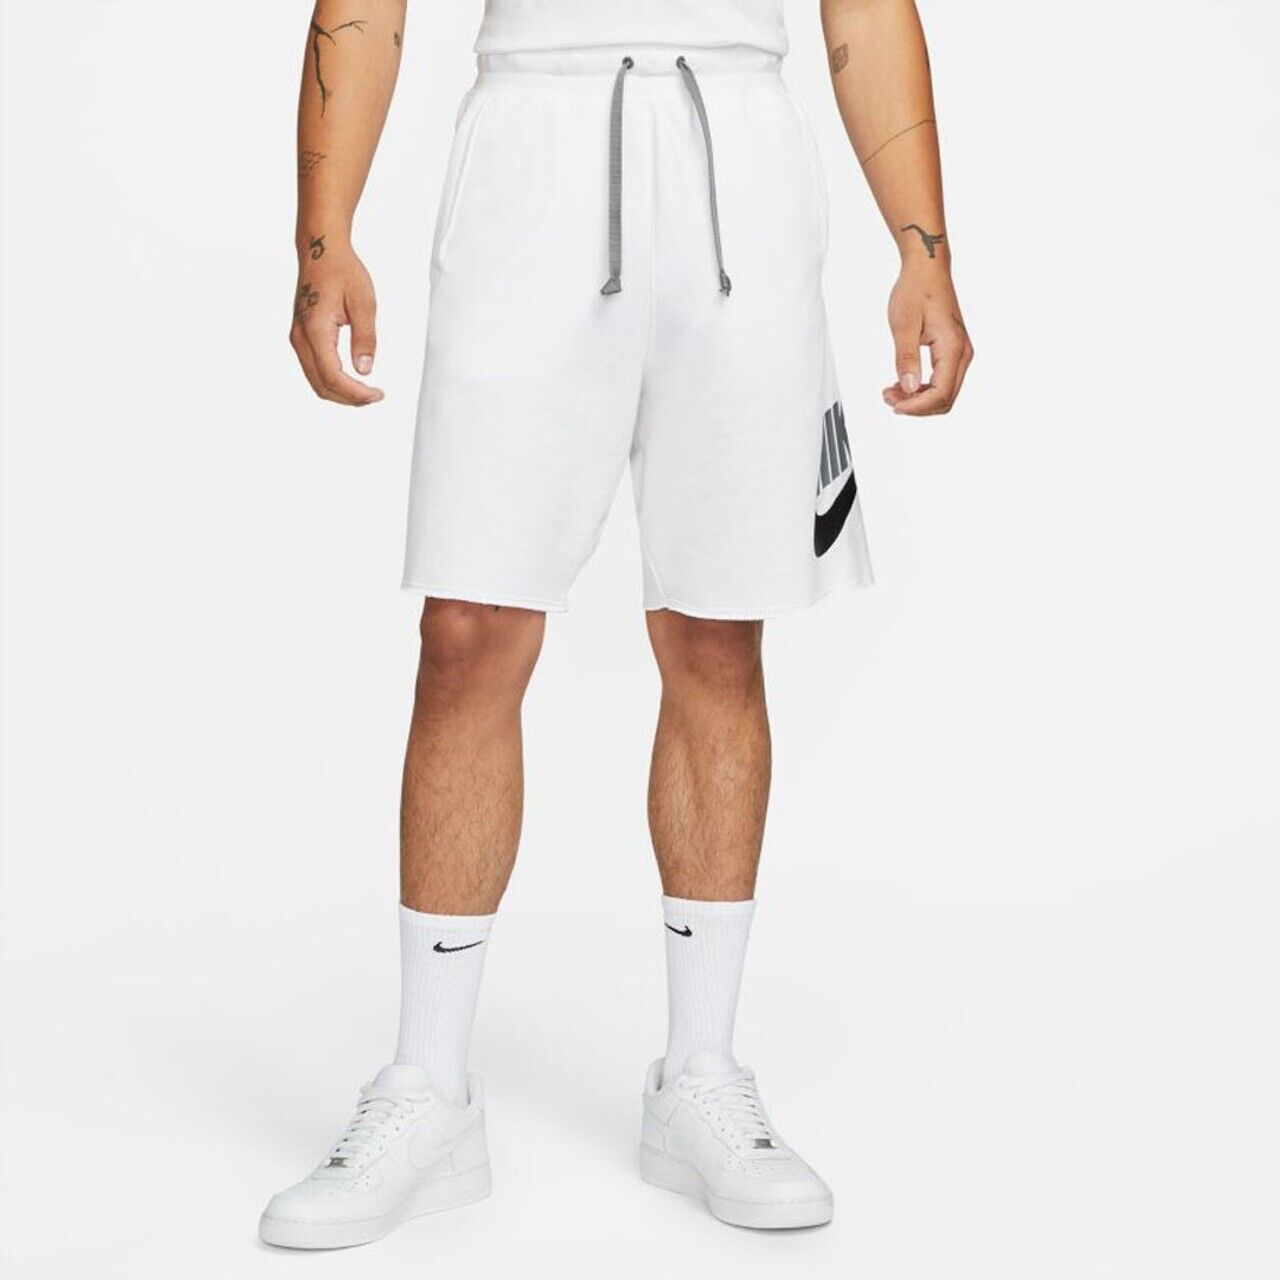 Спортивные шорты мужские Nike Spe Ft Alumni Short, DM6817-100, размер M